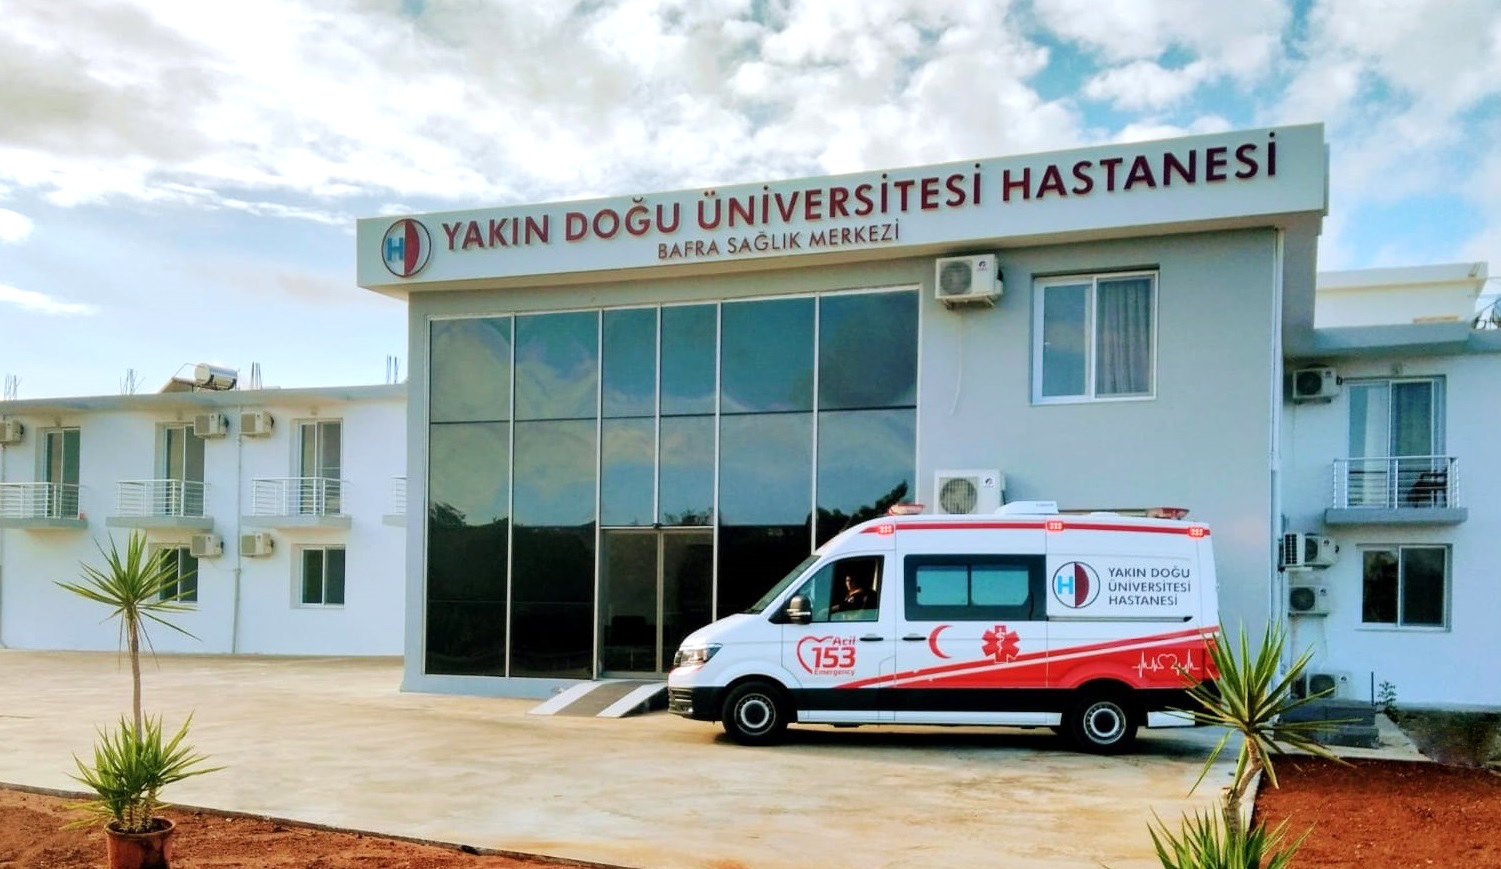 Yakın Doğu Üniversitesi Hastanesi Bafra Sağlık Merkezi Açılıyor